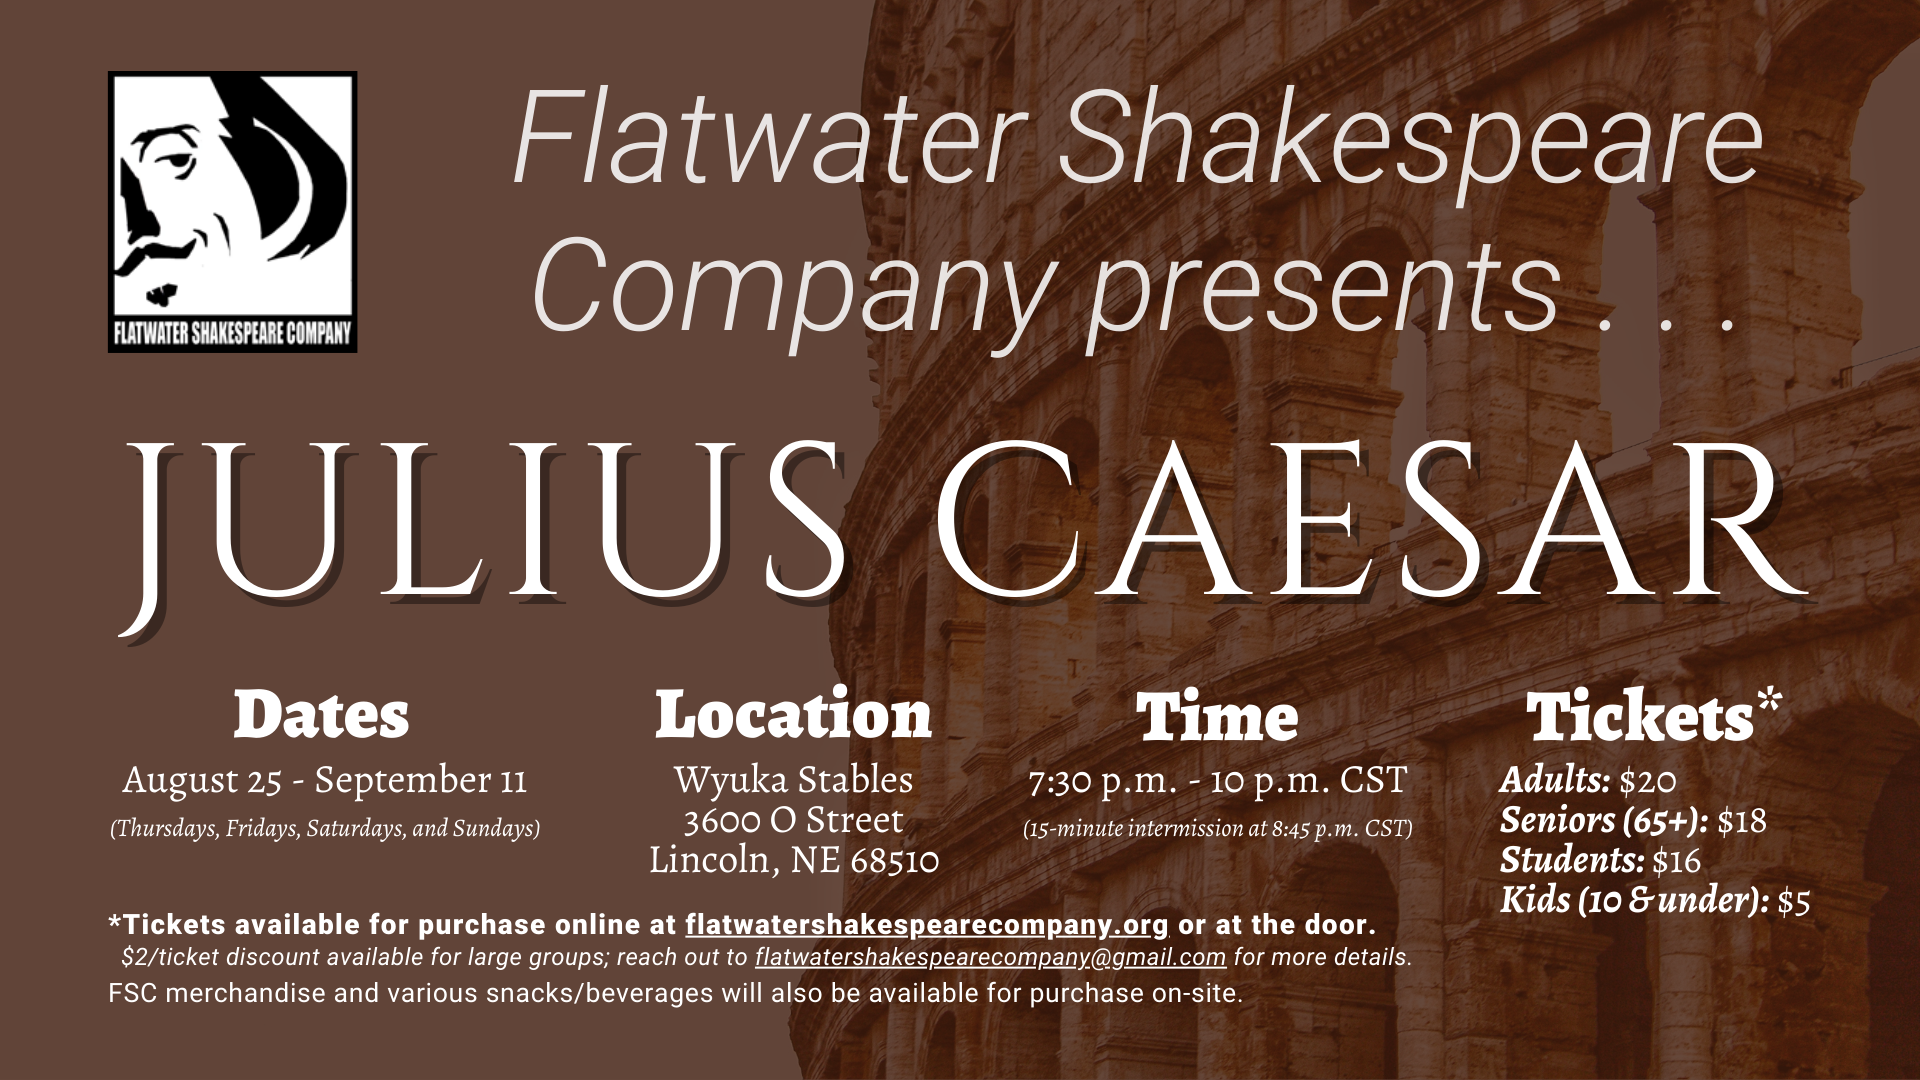 #05STU –– STUDENT: Thurs. Sept. 1, 2022 | 7:30 p.m. - 10 p.m. CST | Wyuka Stables (Julius Caesar)